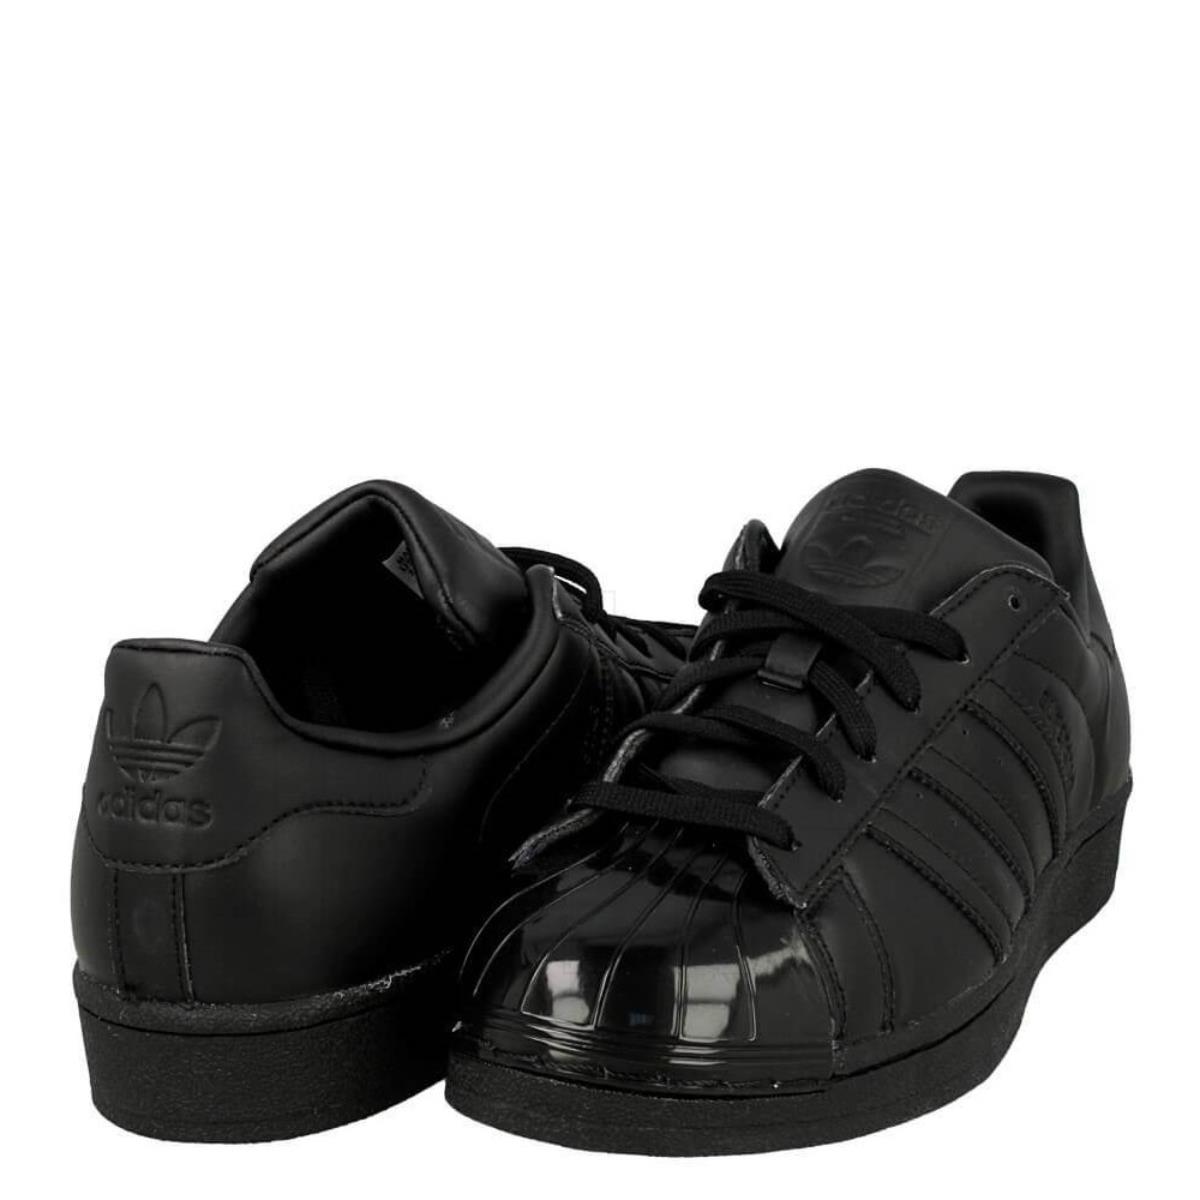 scarpe adidas nere lucide |Trova il miglior prezzo yurtcelik.com.tr